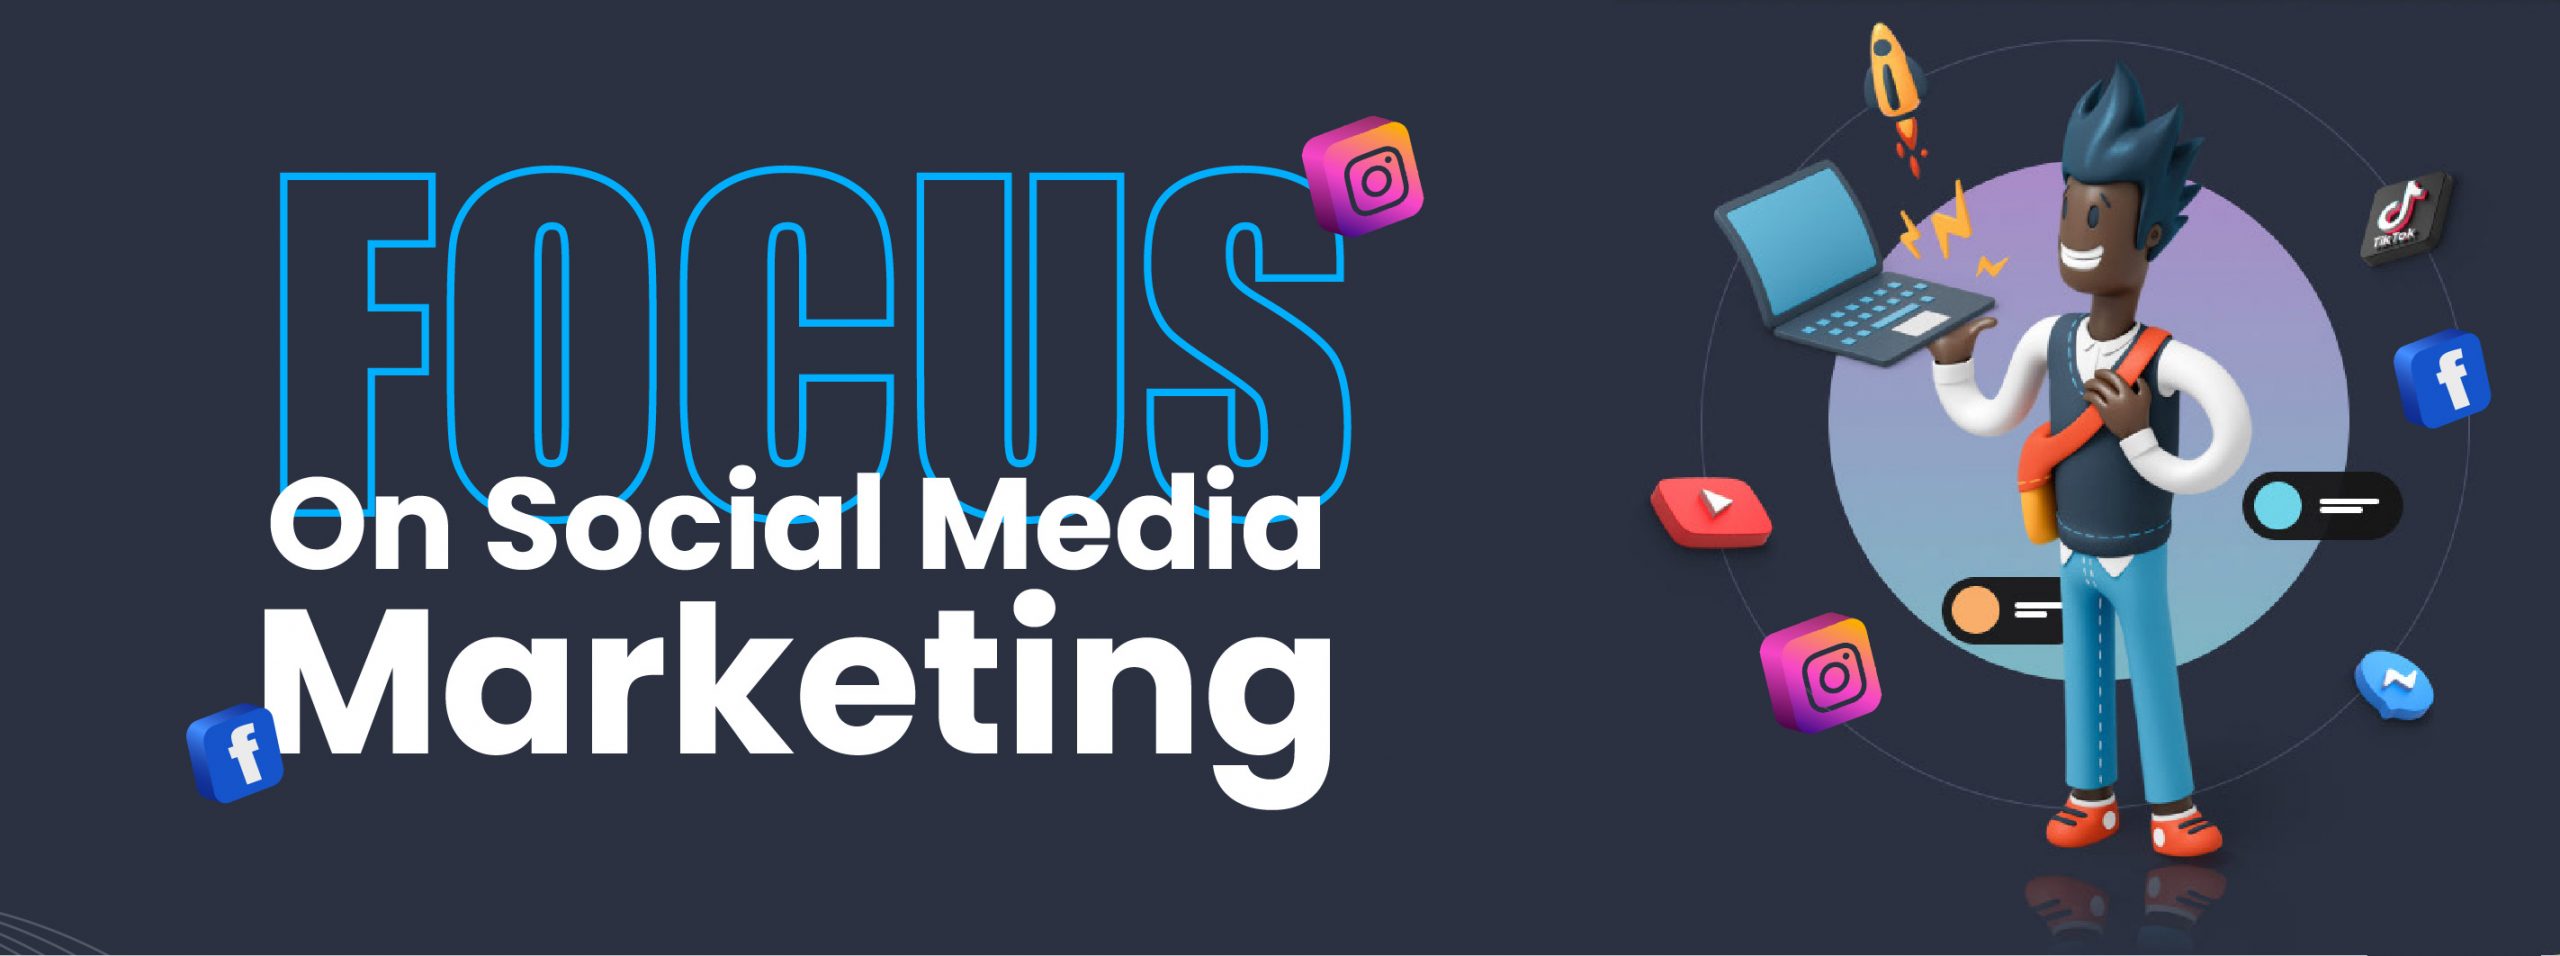 focus on social media marketing